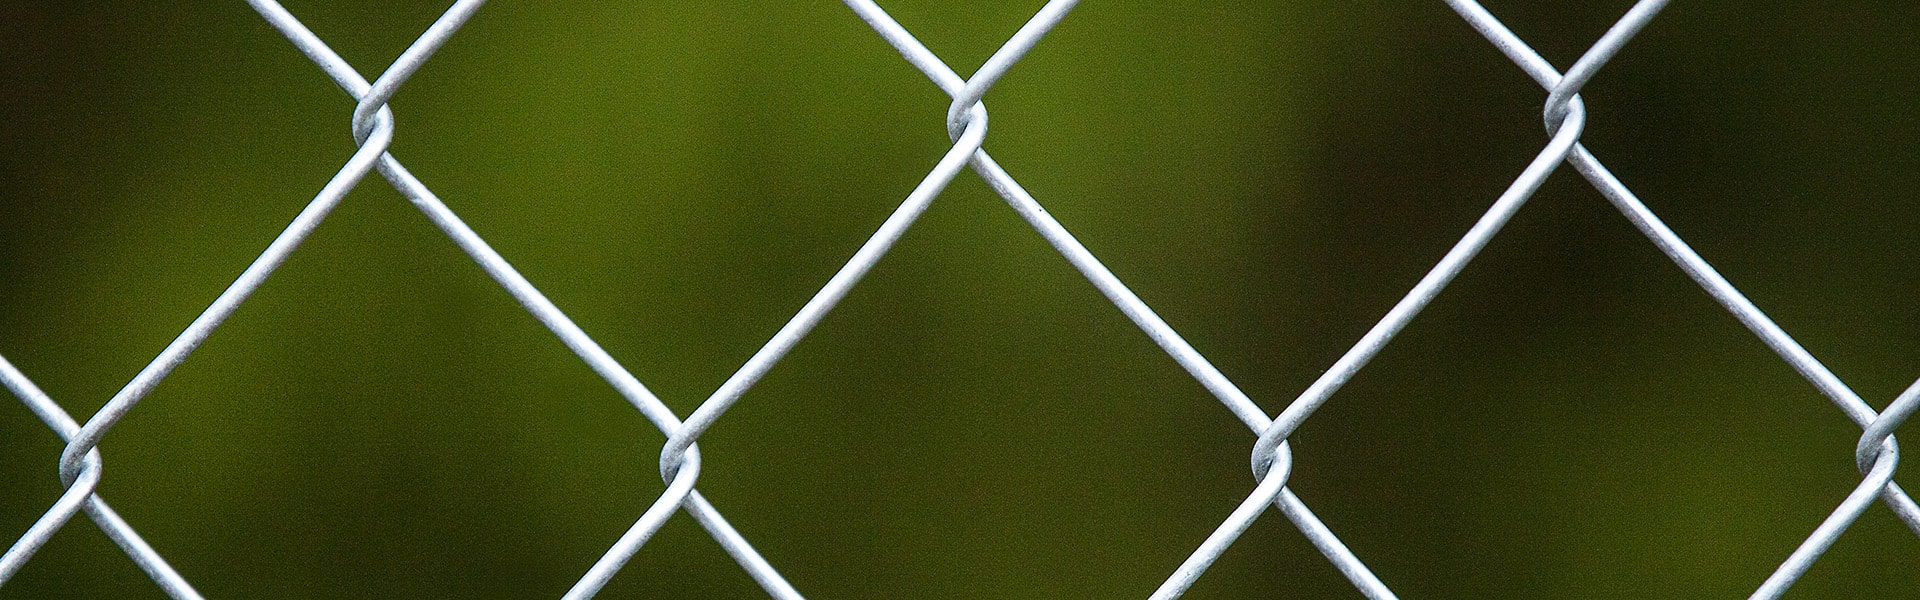 Chain-link fences